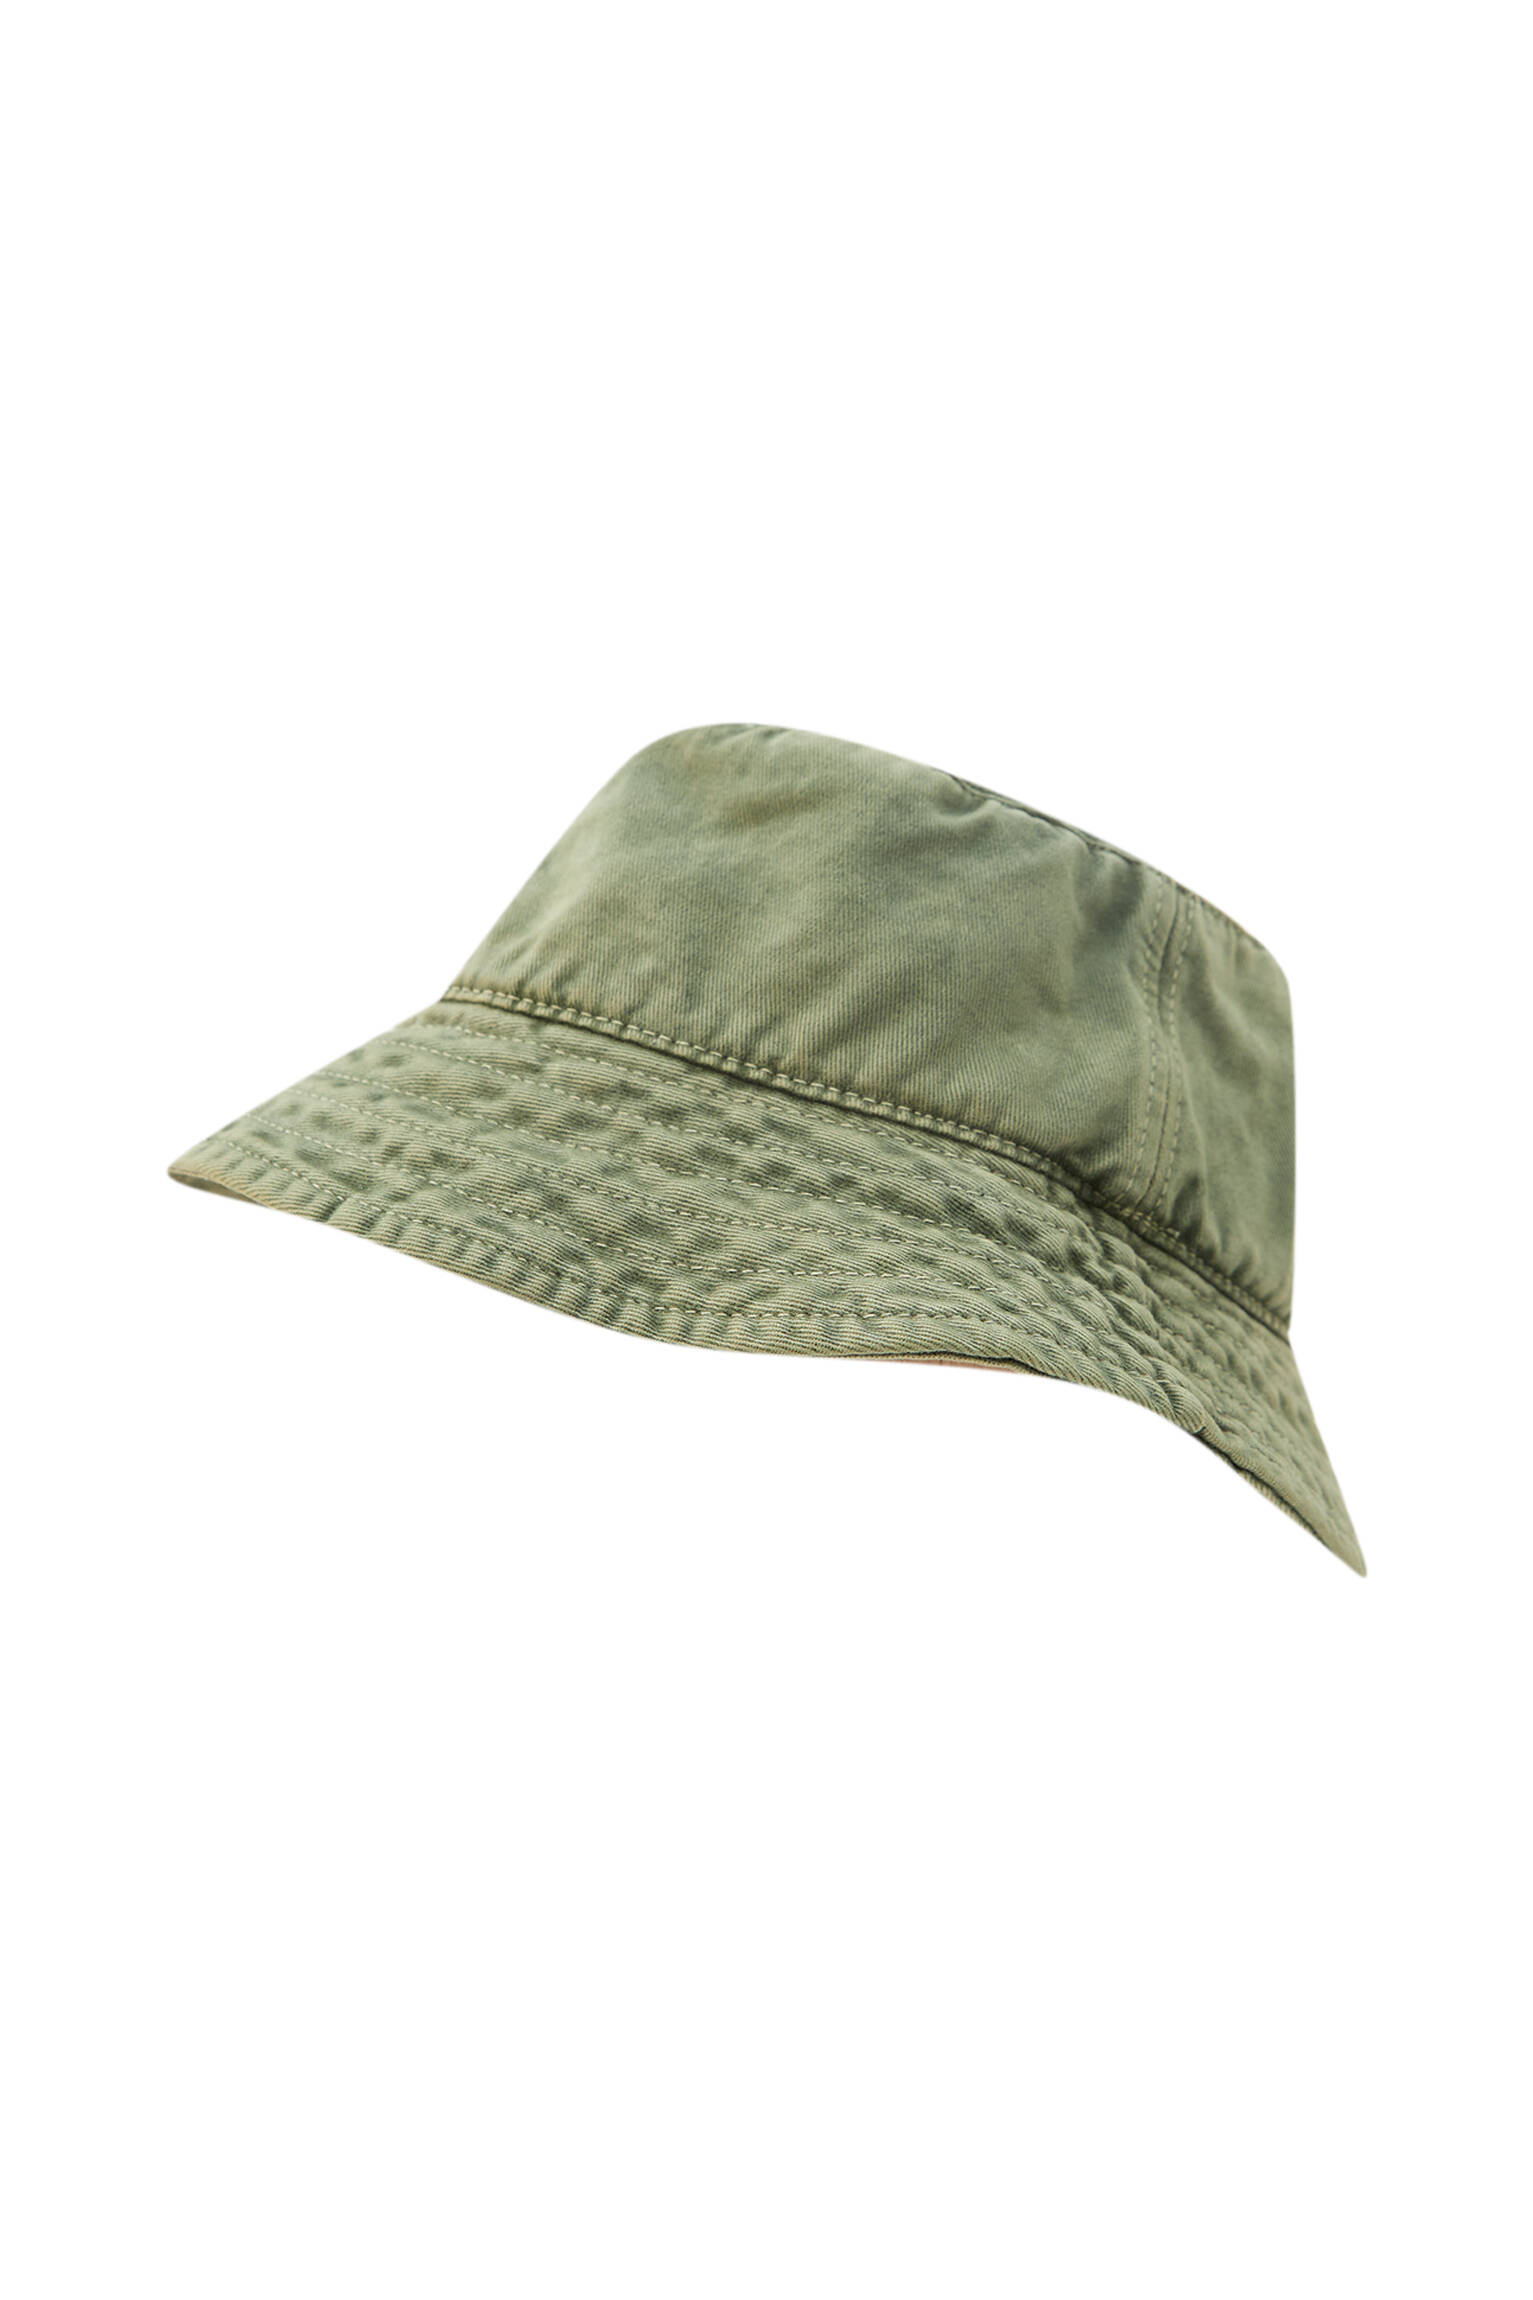 ХАКИ Шляпа из хлопковой ткани с эффектом потертости Pull & Bear